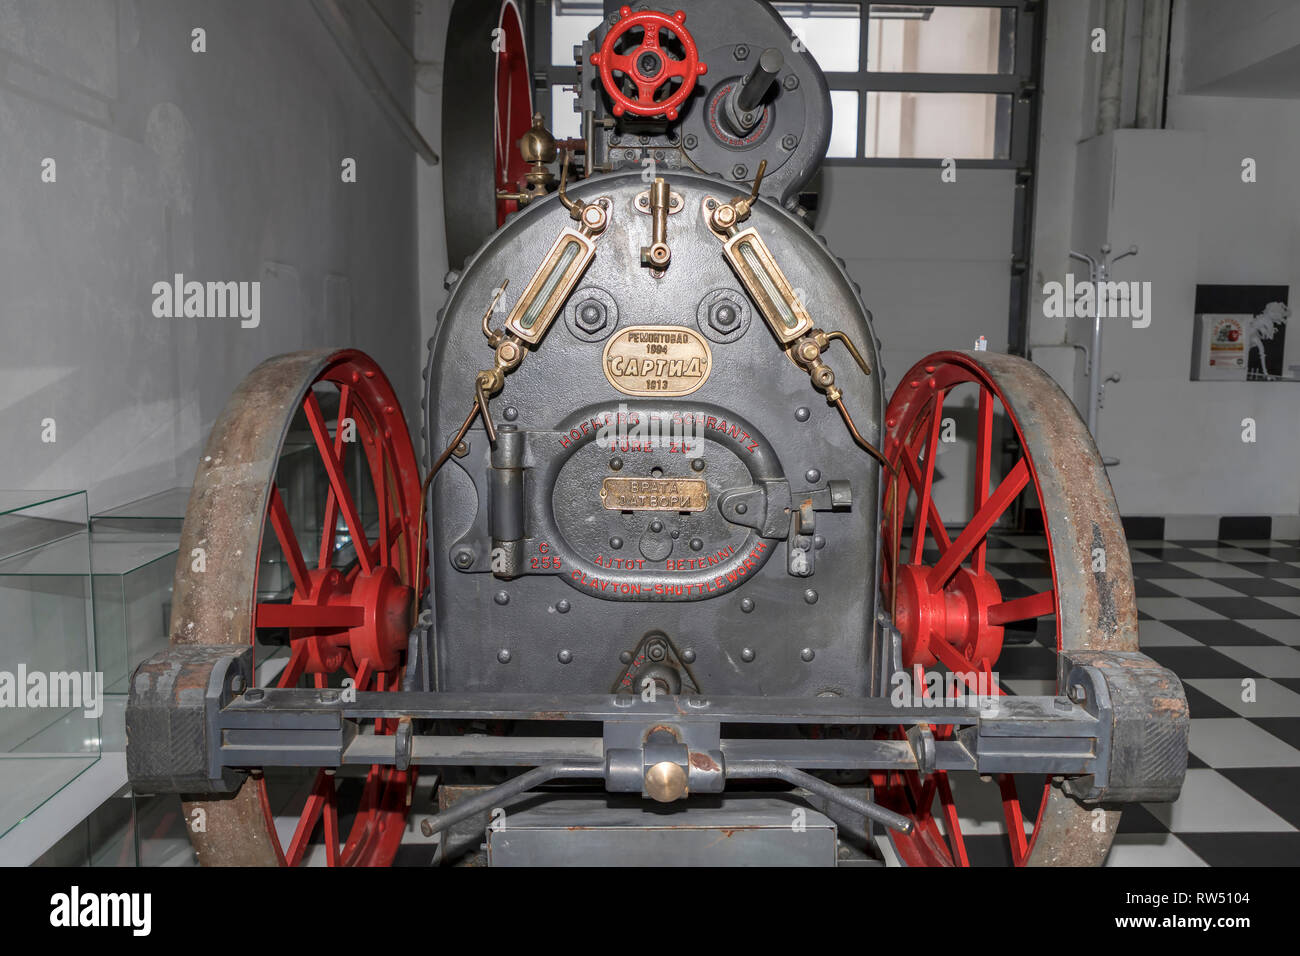 Belgrado, Serbia: Locomobile, muebles motor a vapor utilizados en la agricultura desde fines del siglo XIX, expuesta en el Museo de la ciencia y la tecnología Foto de stock